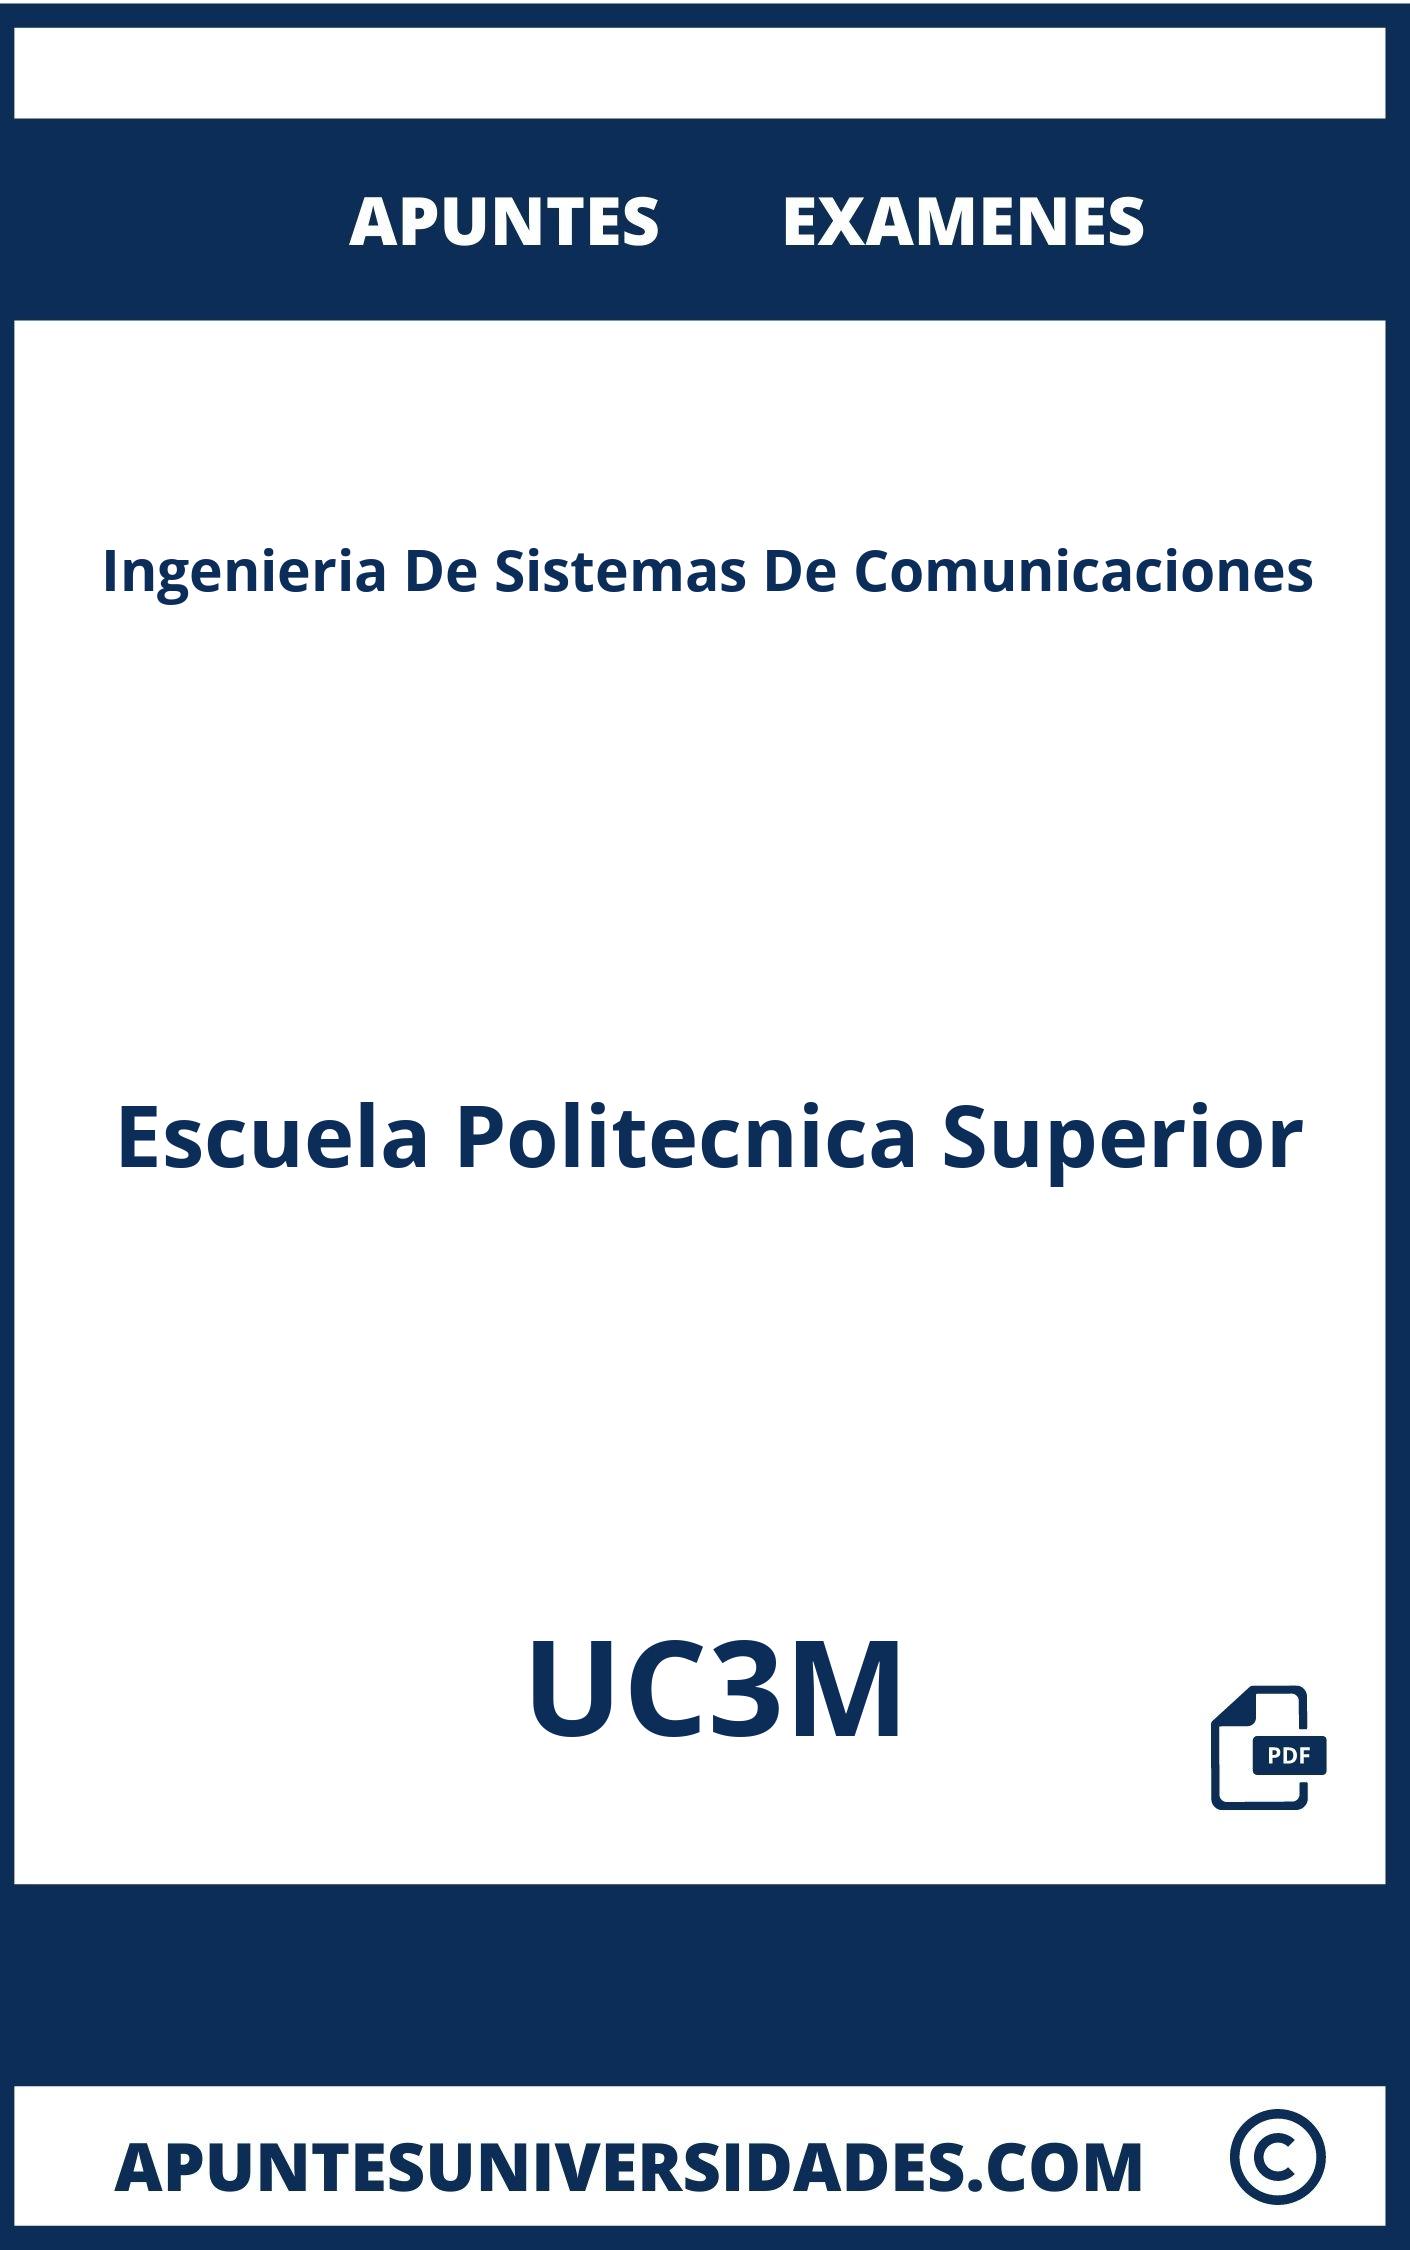 Examenes Apuntes Ingenieria De Sistemas De Comunicaciones UC3M